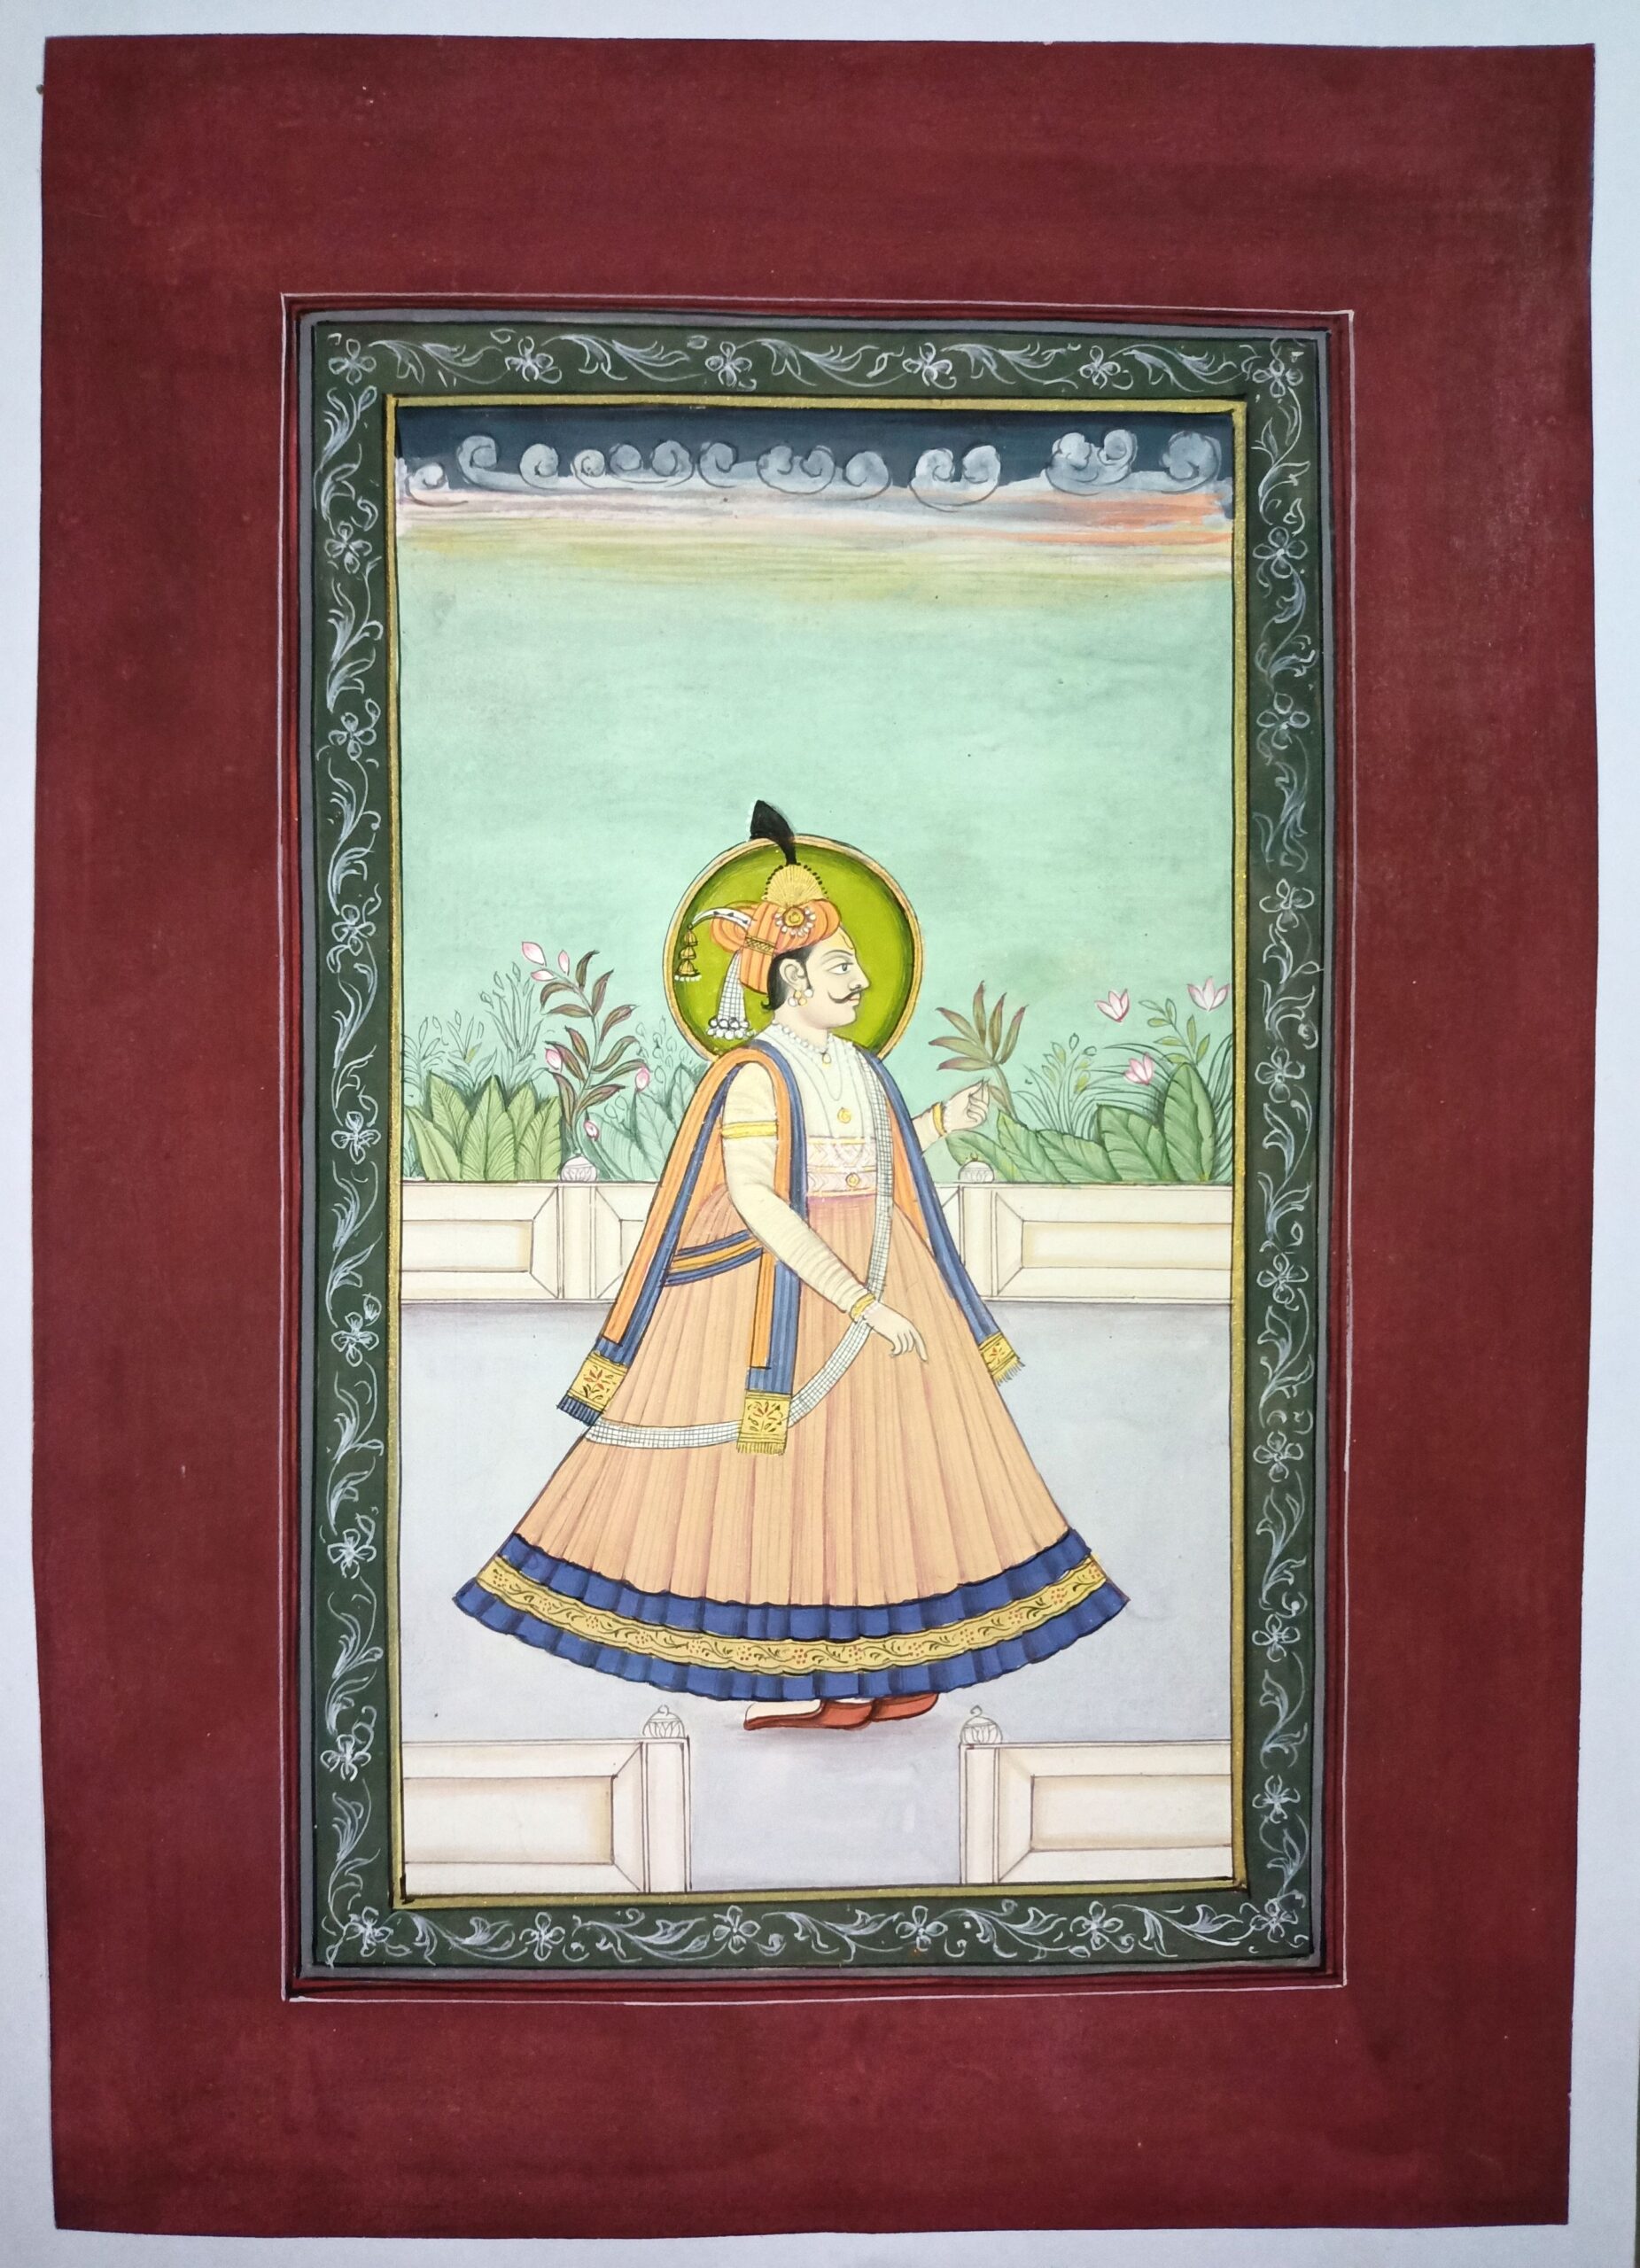 Jai Singh Portrait Painting